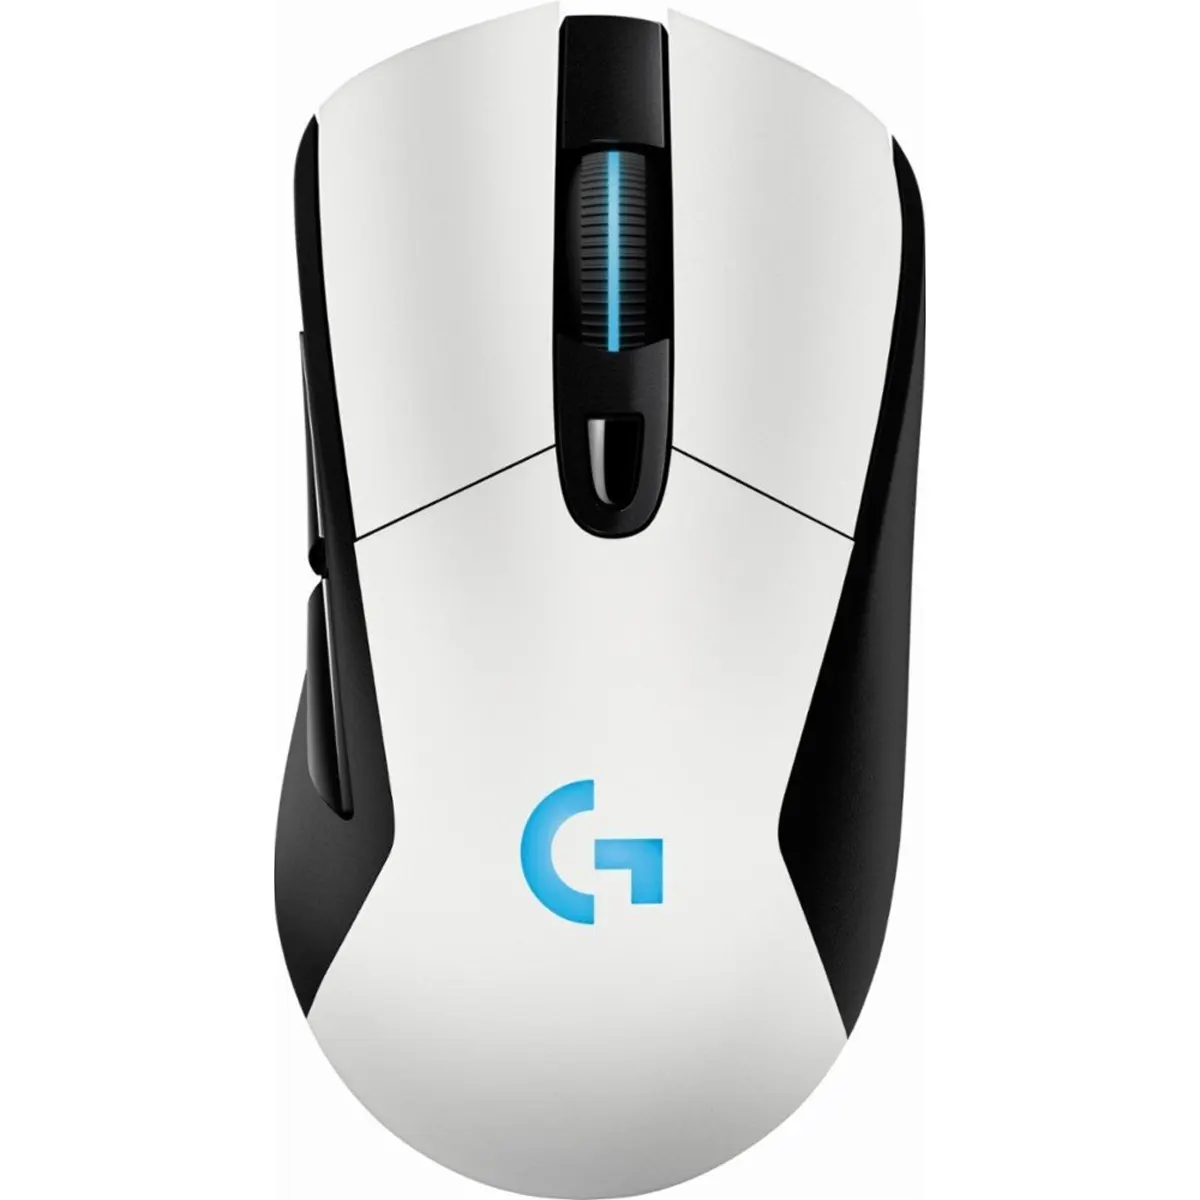 موس گیمینگ بی سیم لاجیتک مدل Logitech G703 Wireless Gaming Mouse White رنگ سفید (1)